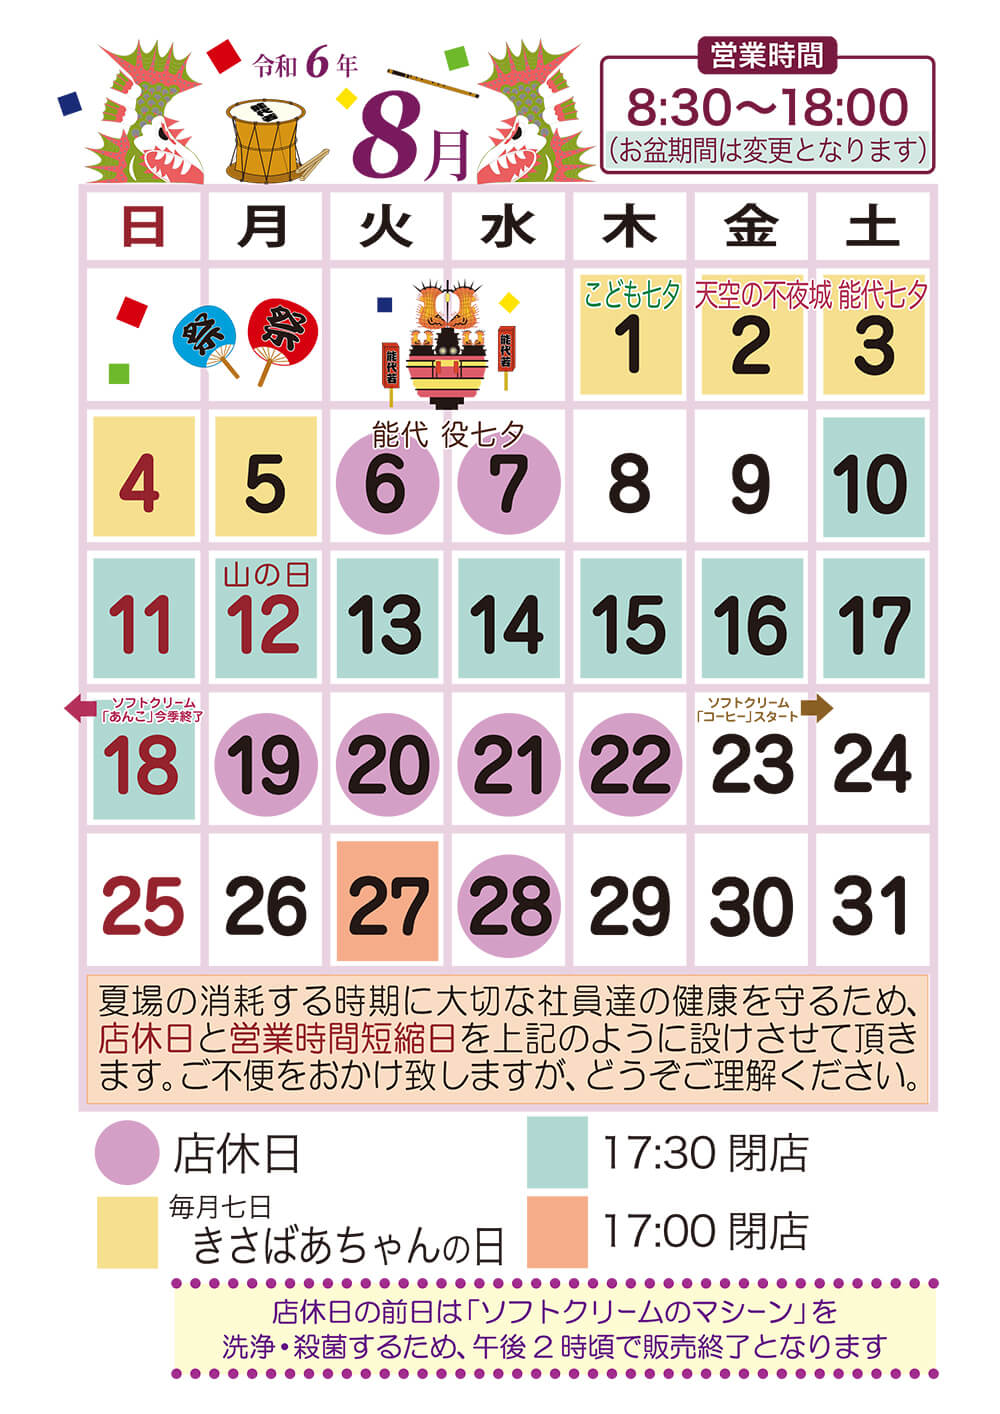 8月営業日カレンダー